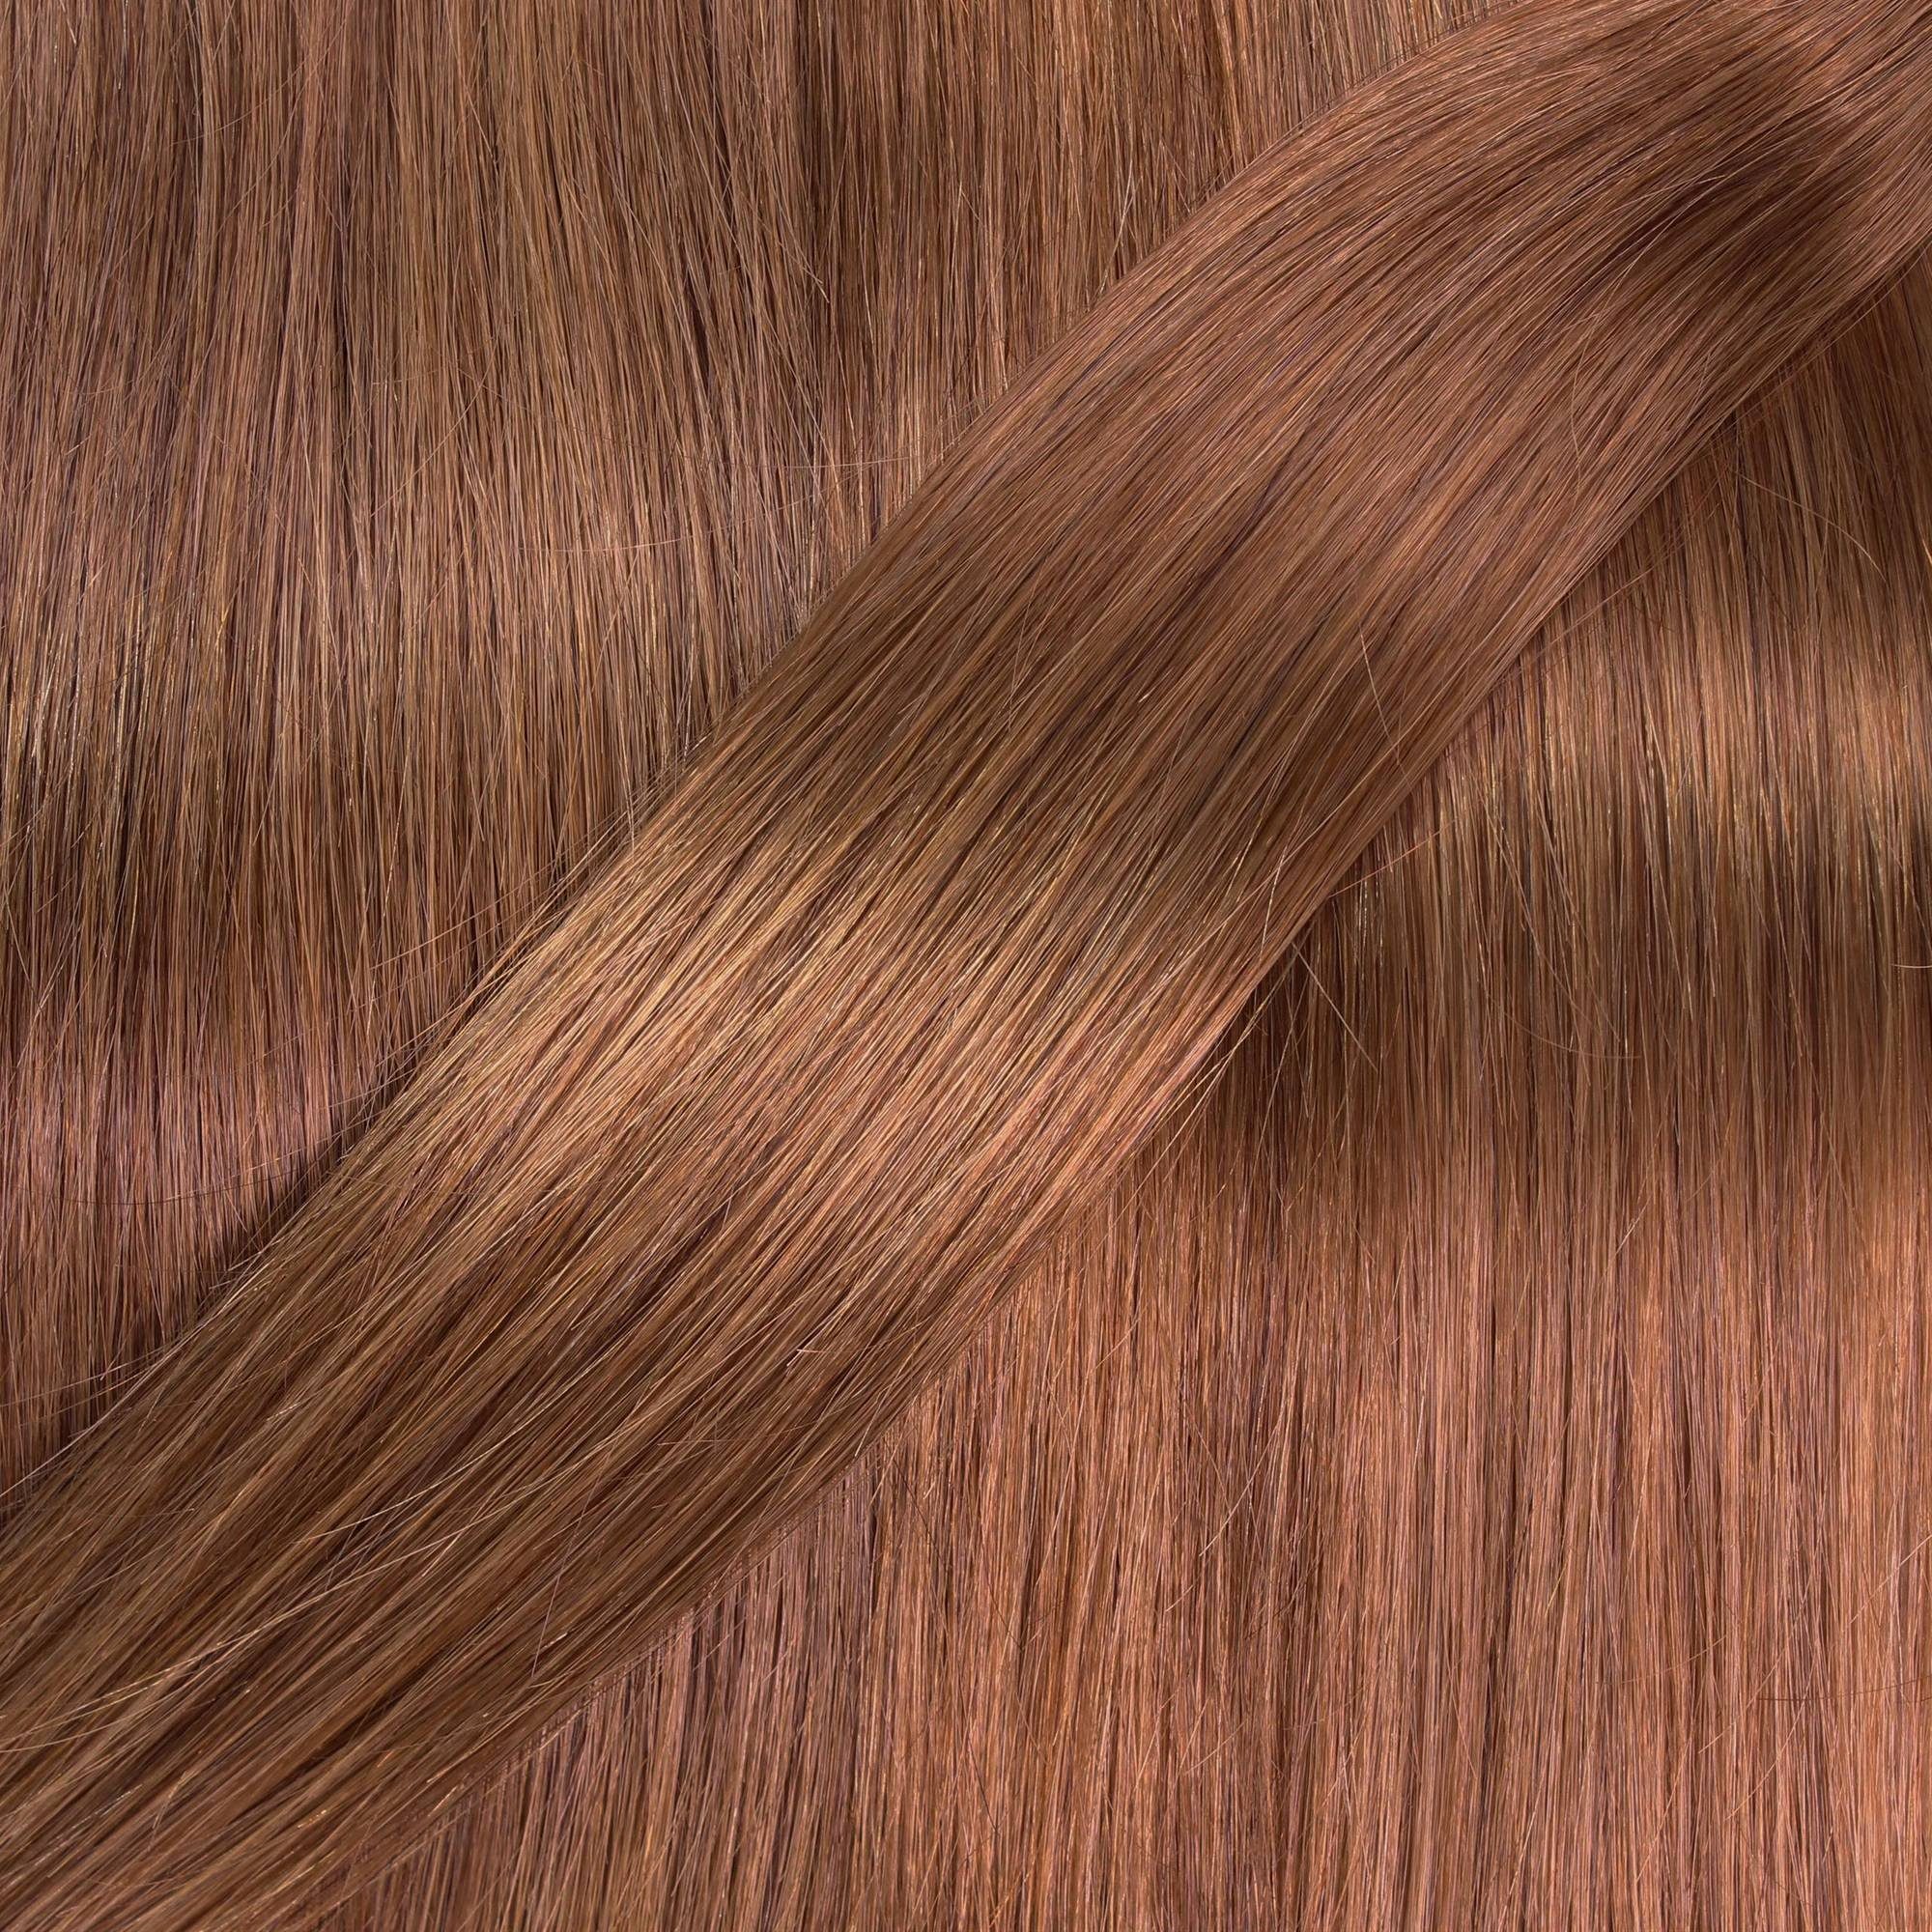 Extensions gewellt 40cm Hellblond Echthaar-Extension #8/03 Natur-Gold hair2heart 0.5g Bonding